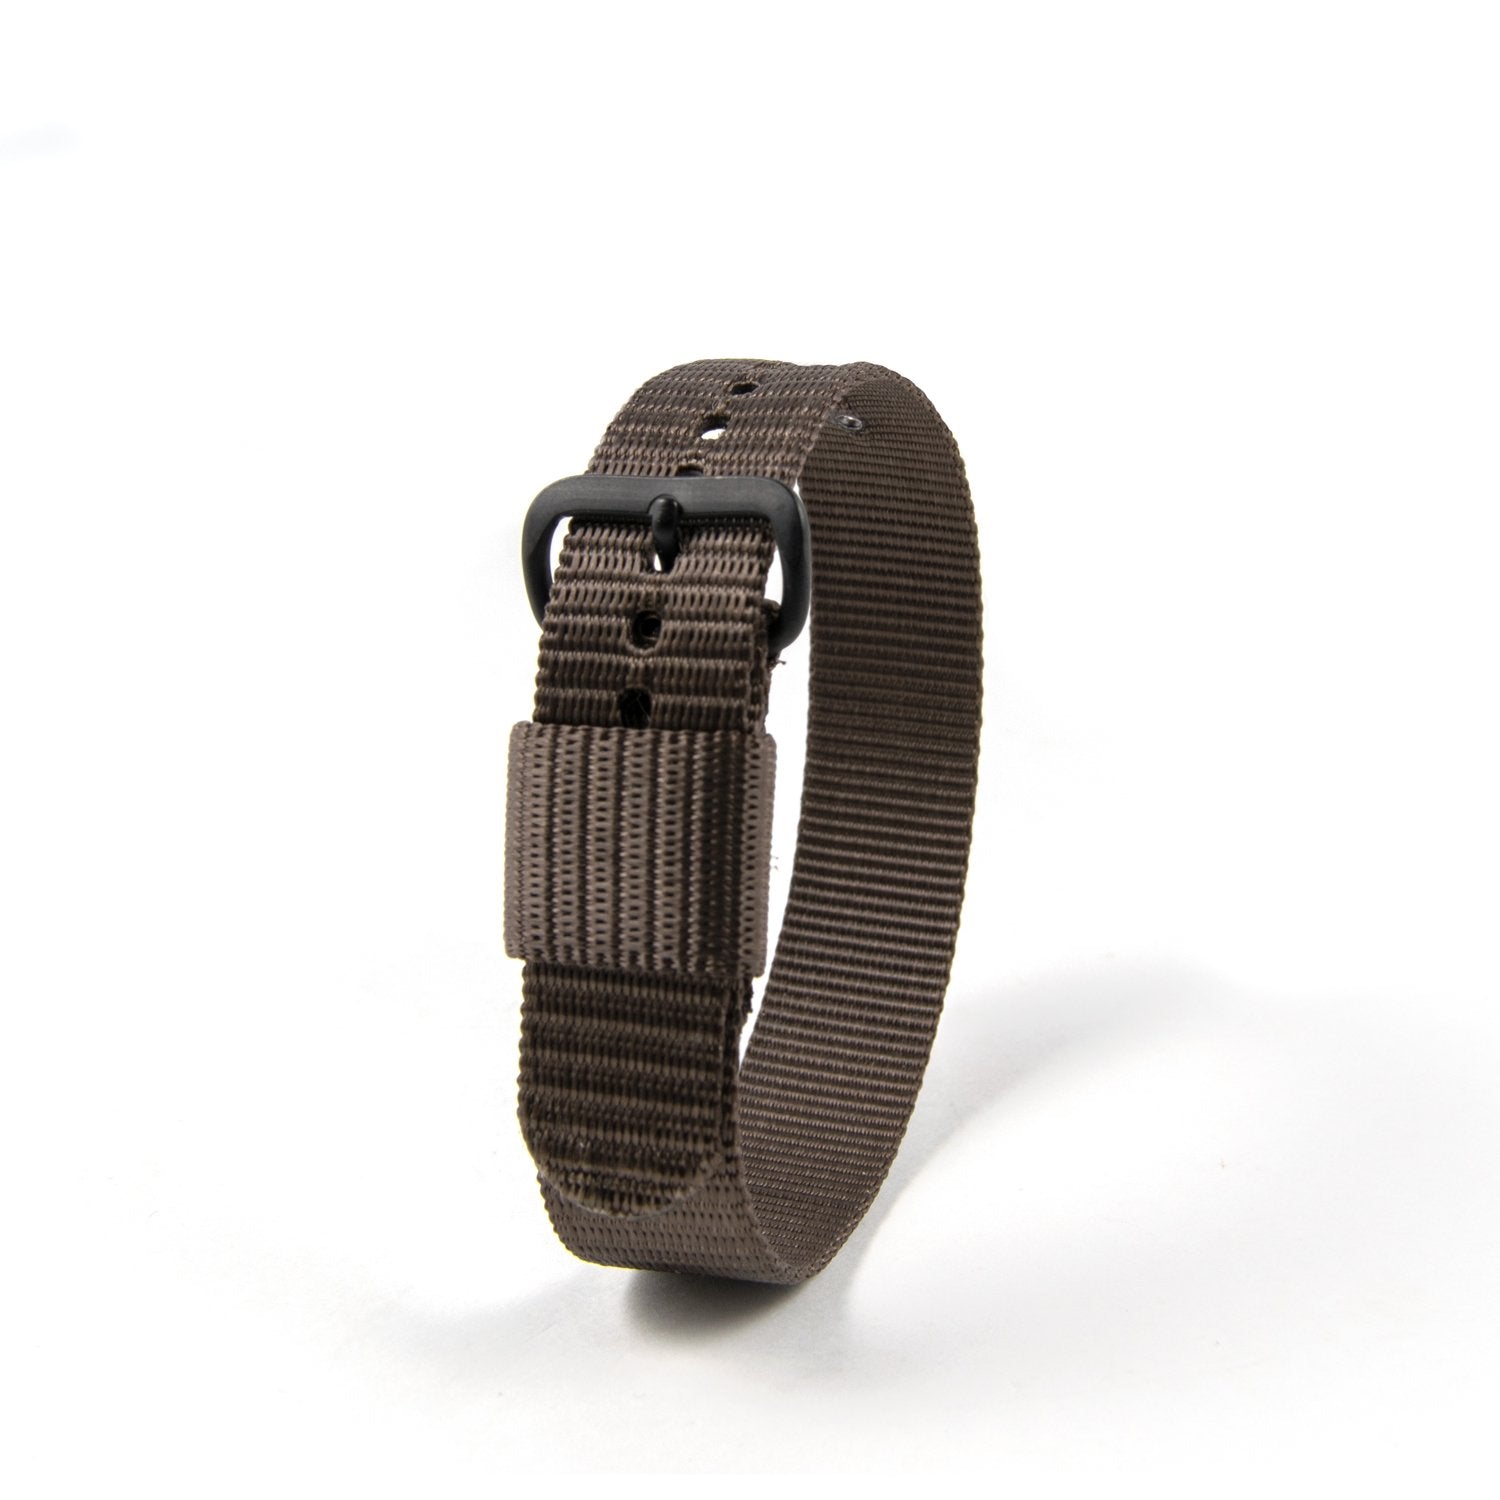 Długość 16 mm – 10 cali – Pasek/pasek do zegarka z nylonu balistycznego i klamrą ze stali nierdzewnej – zegarek maratoński